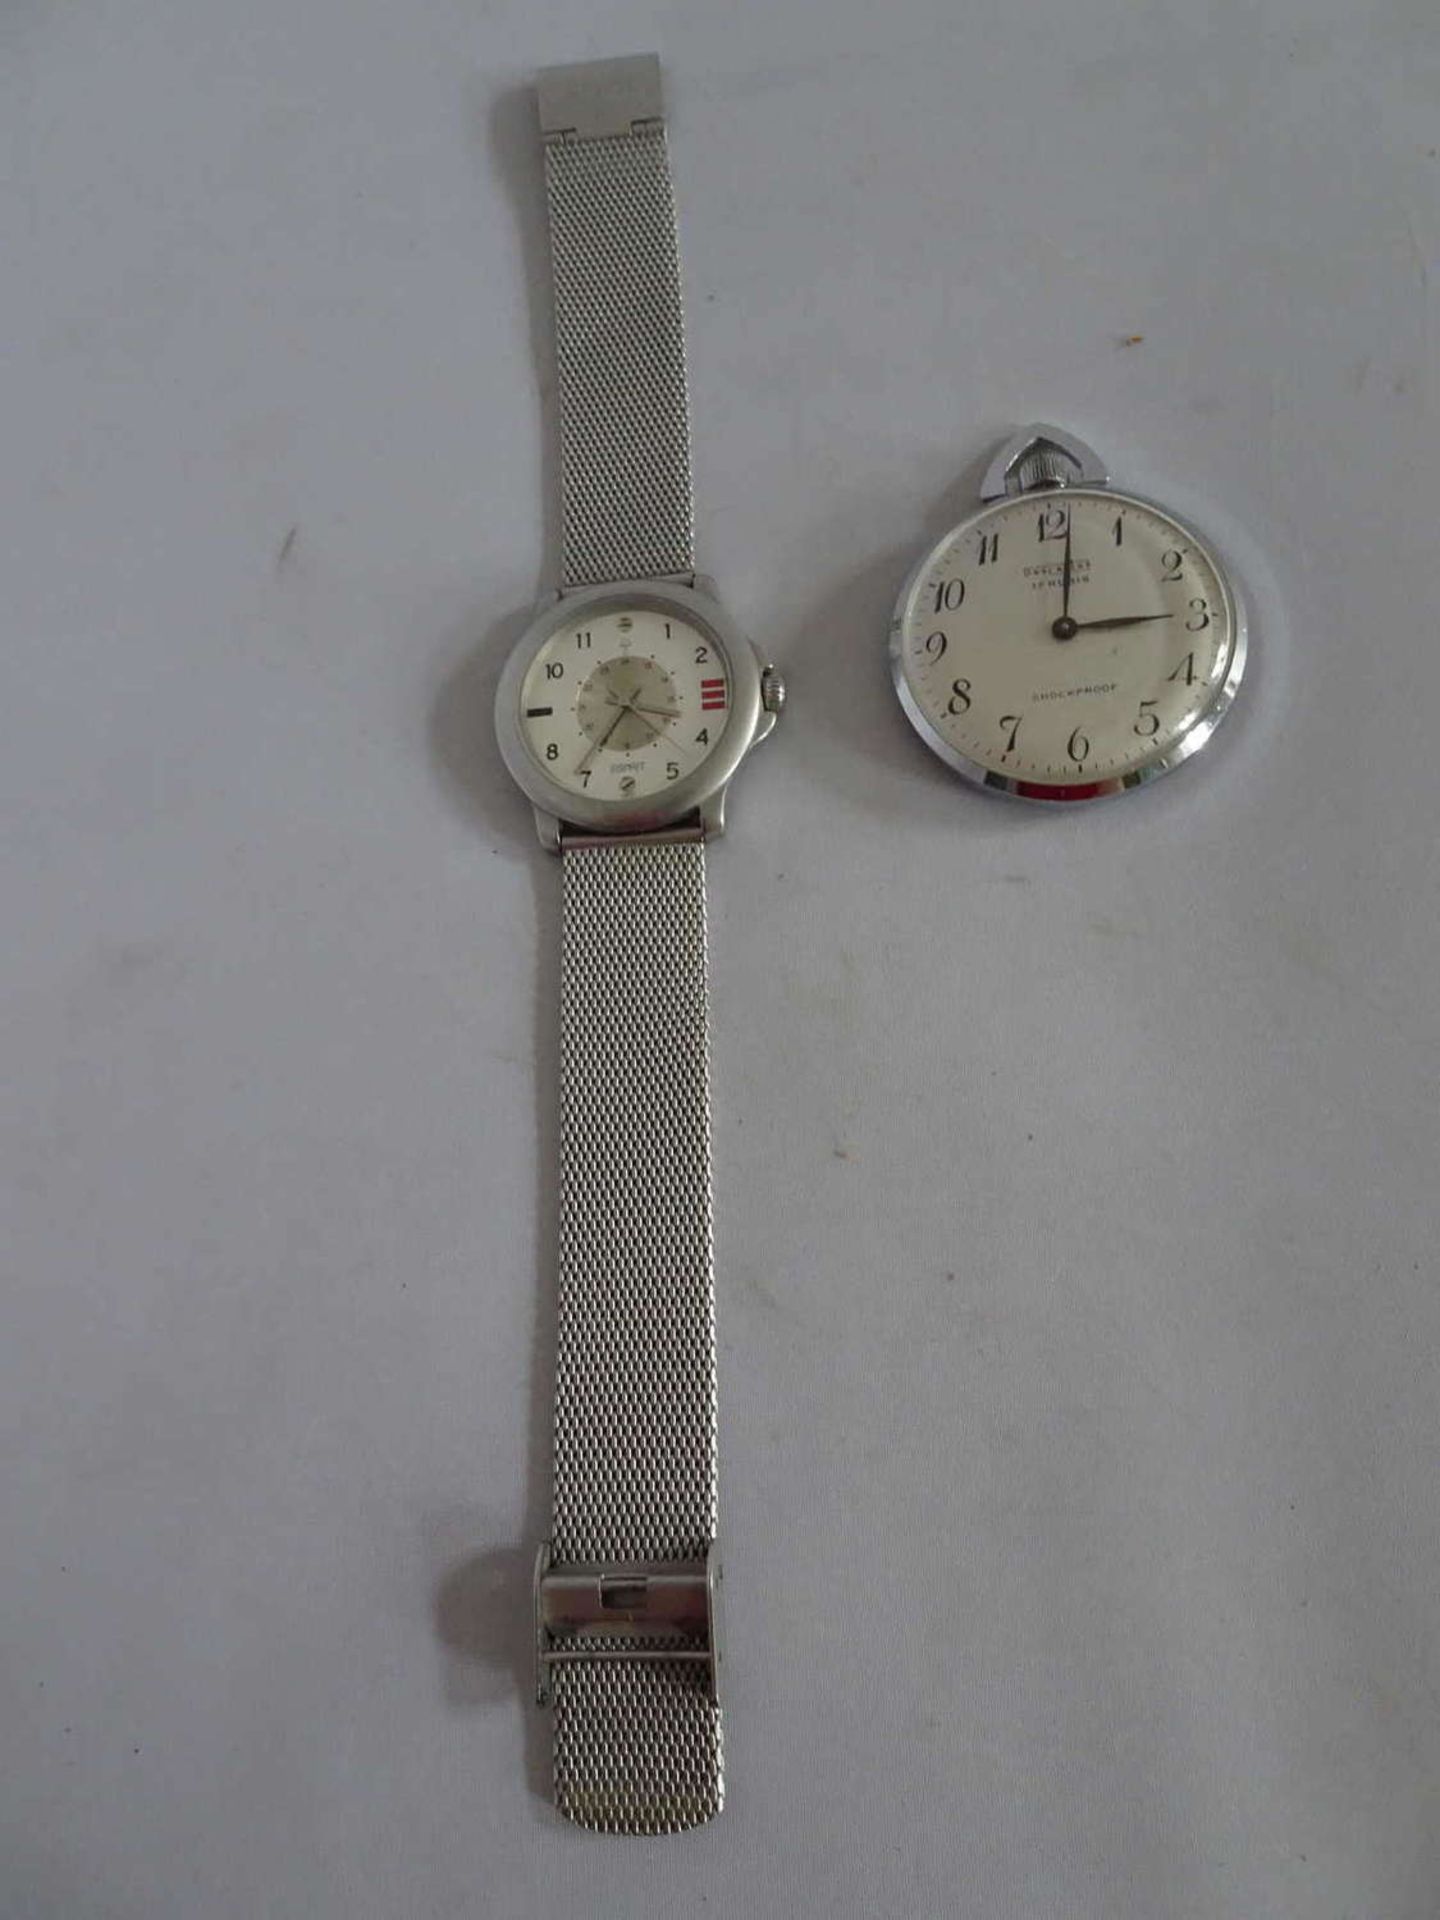 1 Taschenuhr Descartes, 17 Rubis, Funktion ok, sowie 1 Esprit Armbanduhr1 pocket watch Descartes, 17